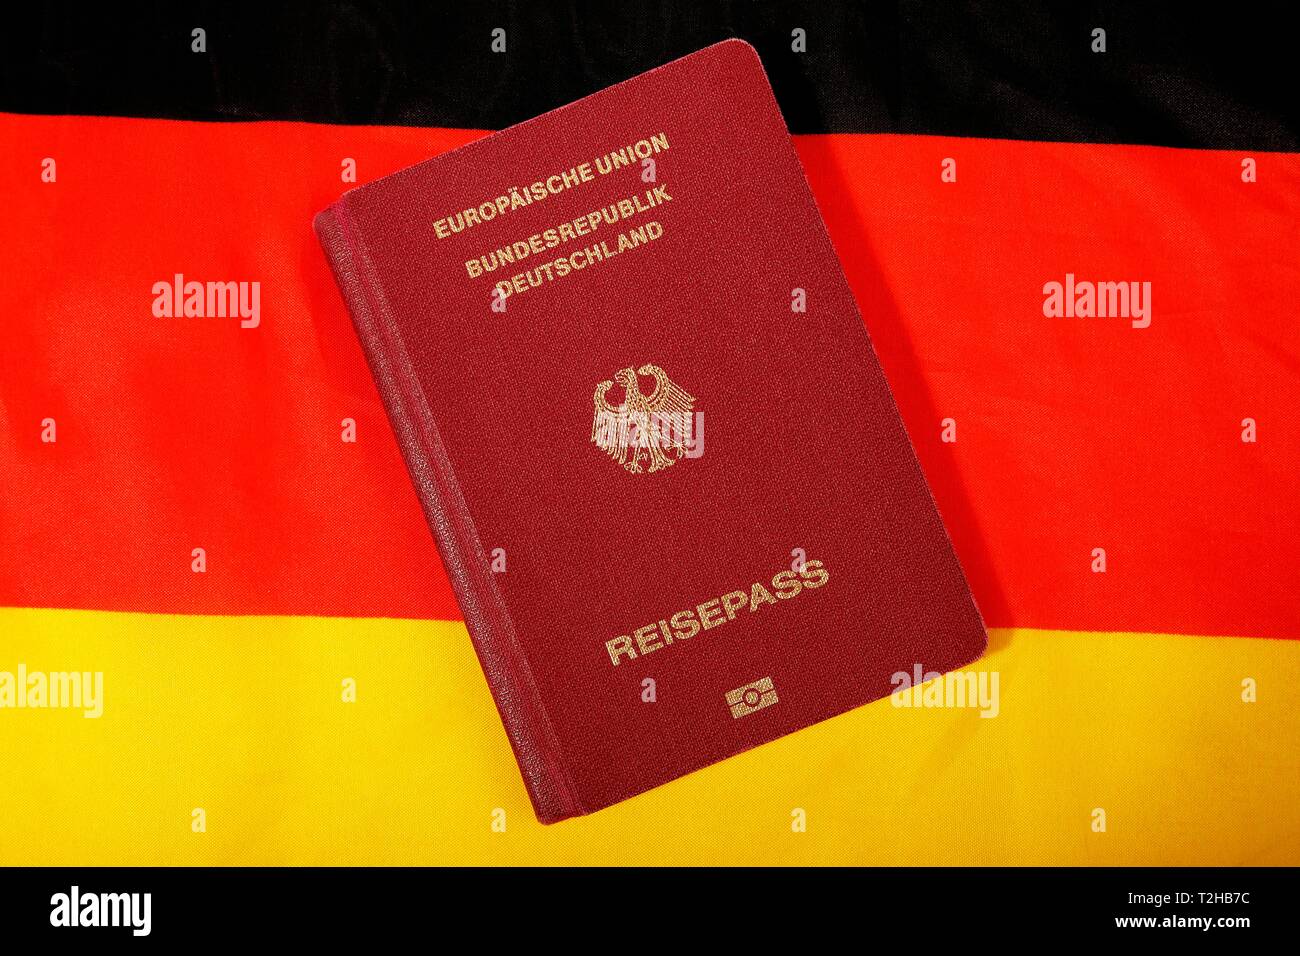 Pasaporte biométrico República Federal de Alemania, la Unión Europea, Rojo-negro-dorado detrás de la Bandera Nacional Alemana, Alemania Foto de stock